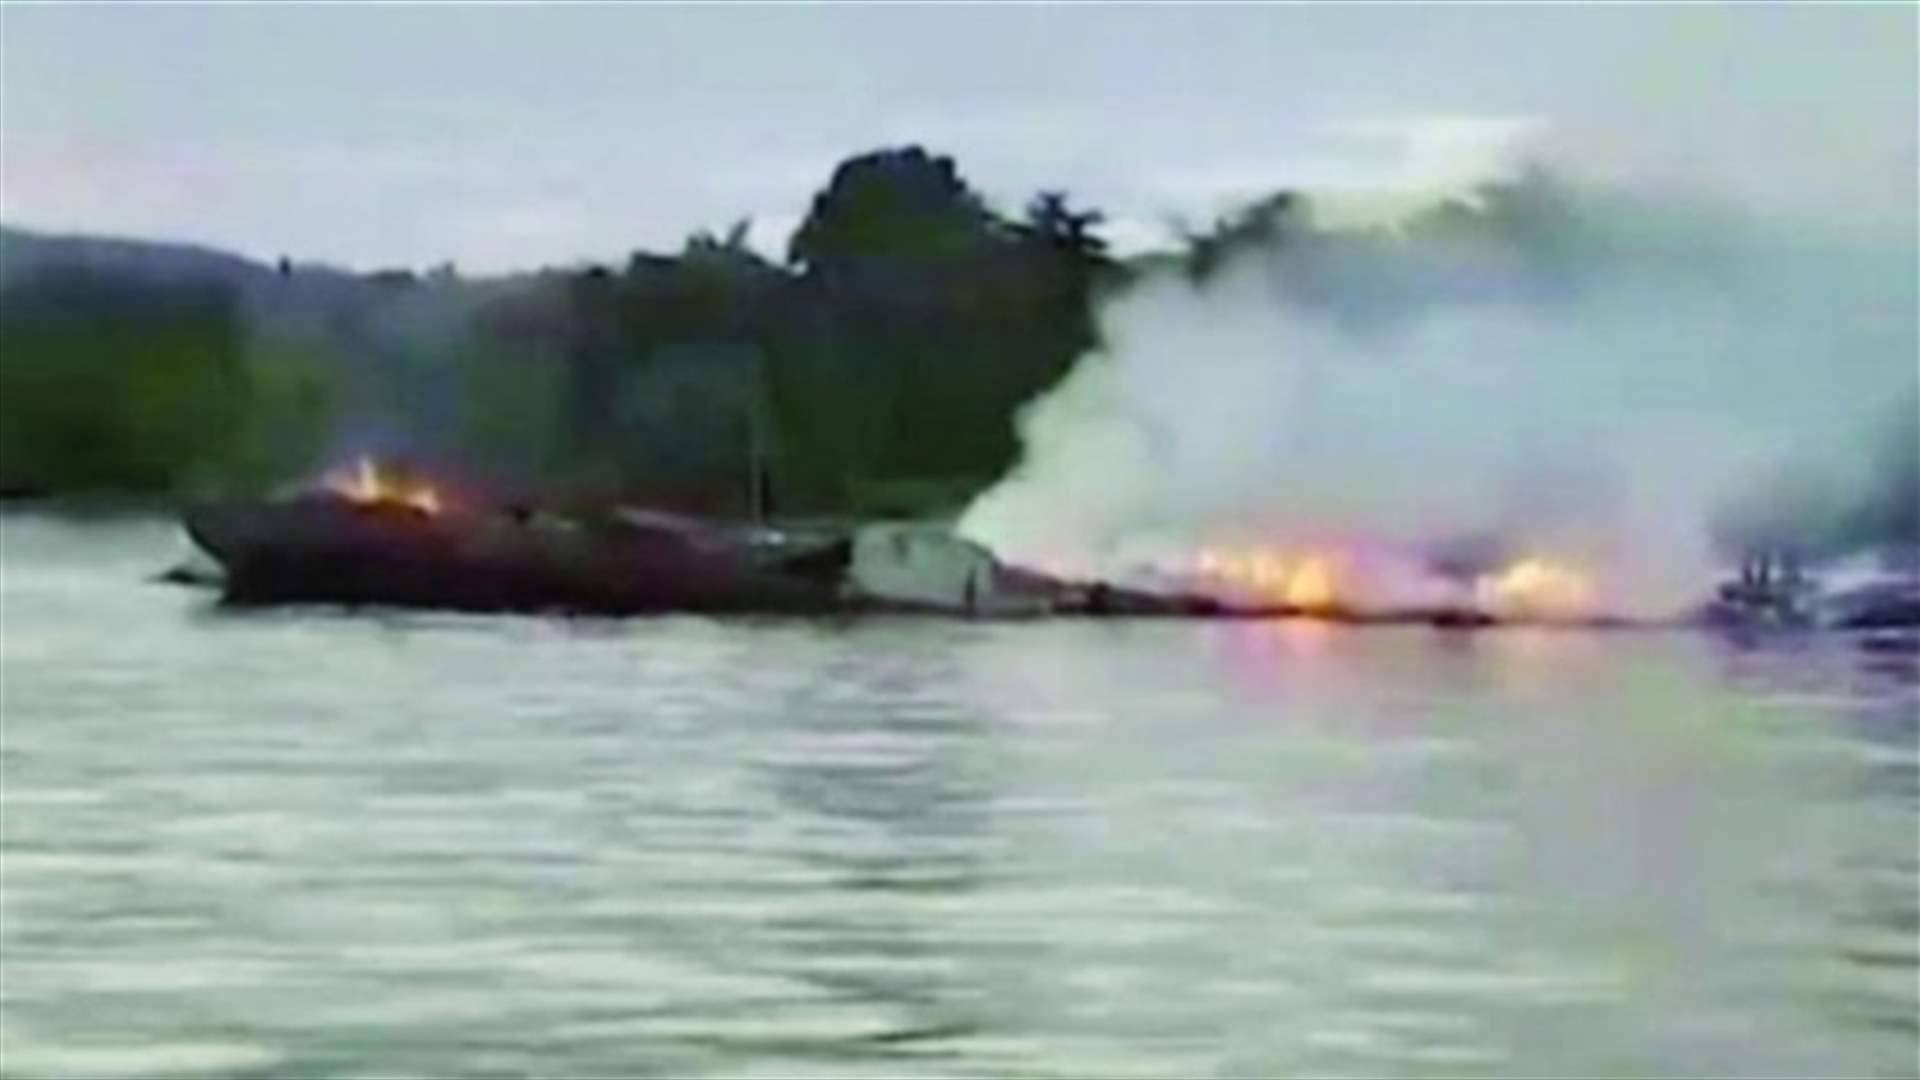 فرق الإنقاذ تؤكد مقتل 3 وإجلاء 300 بعد حريق بعبارة في إندونيسيا